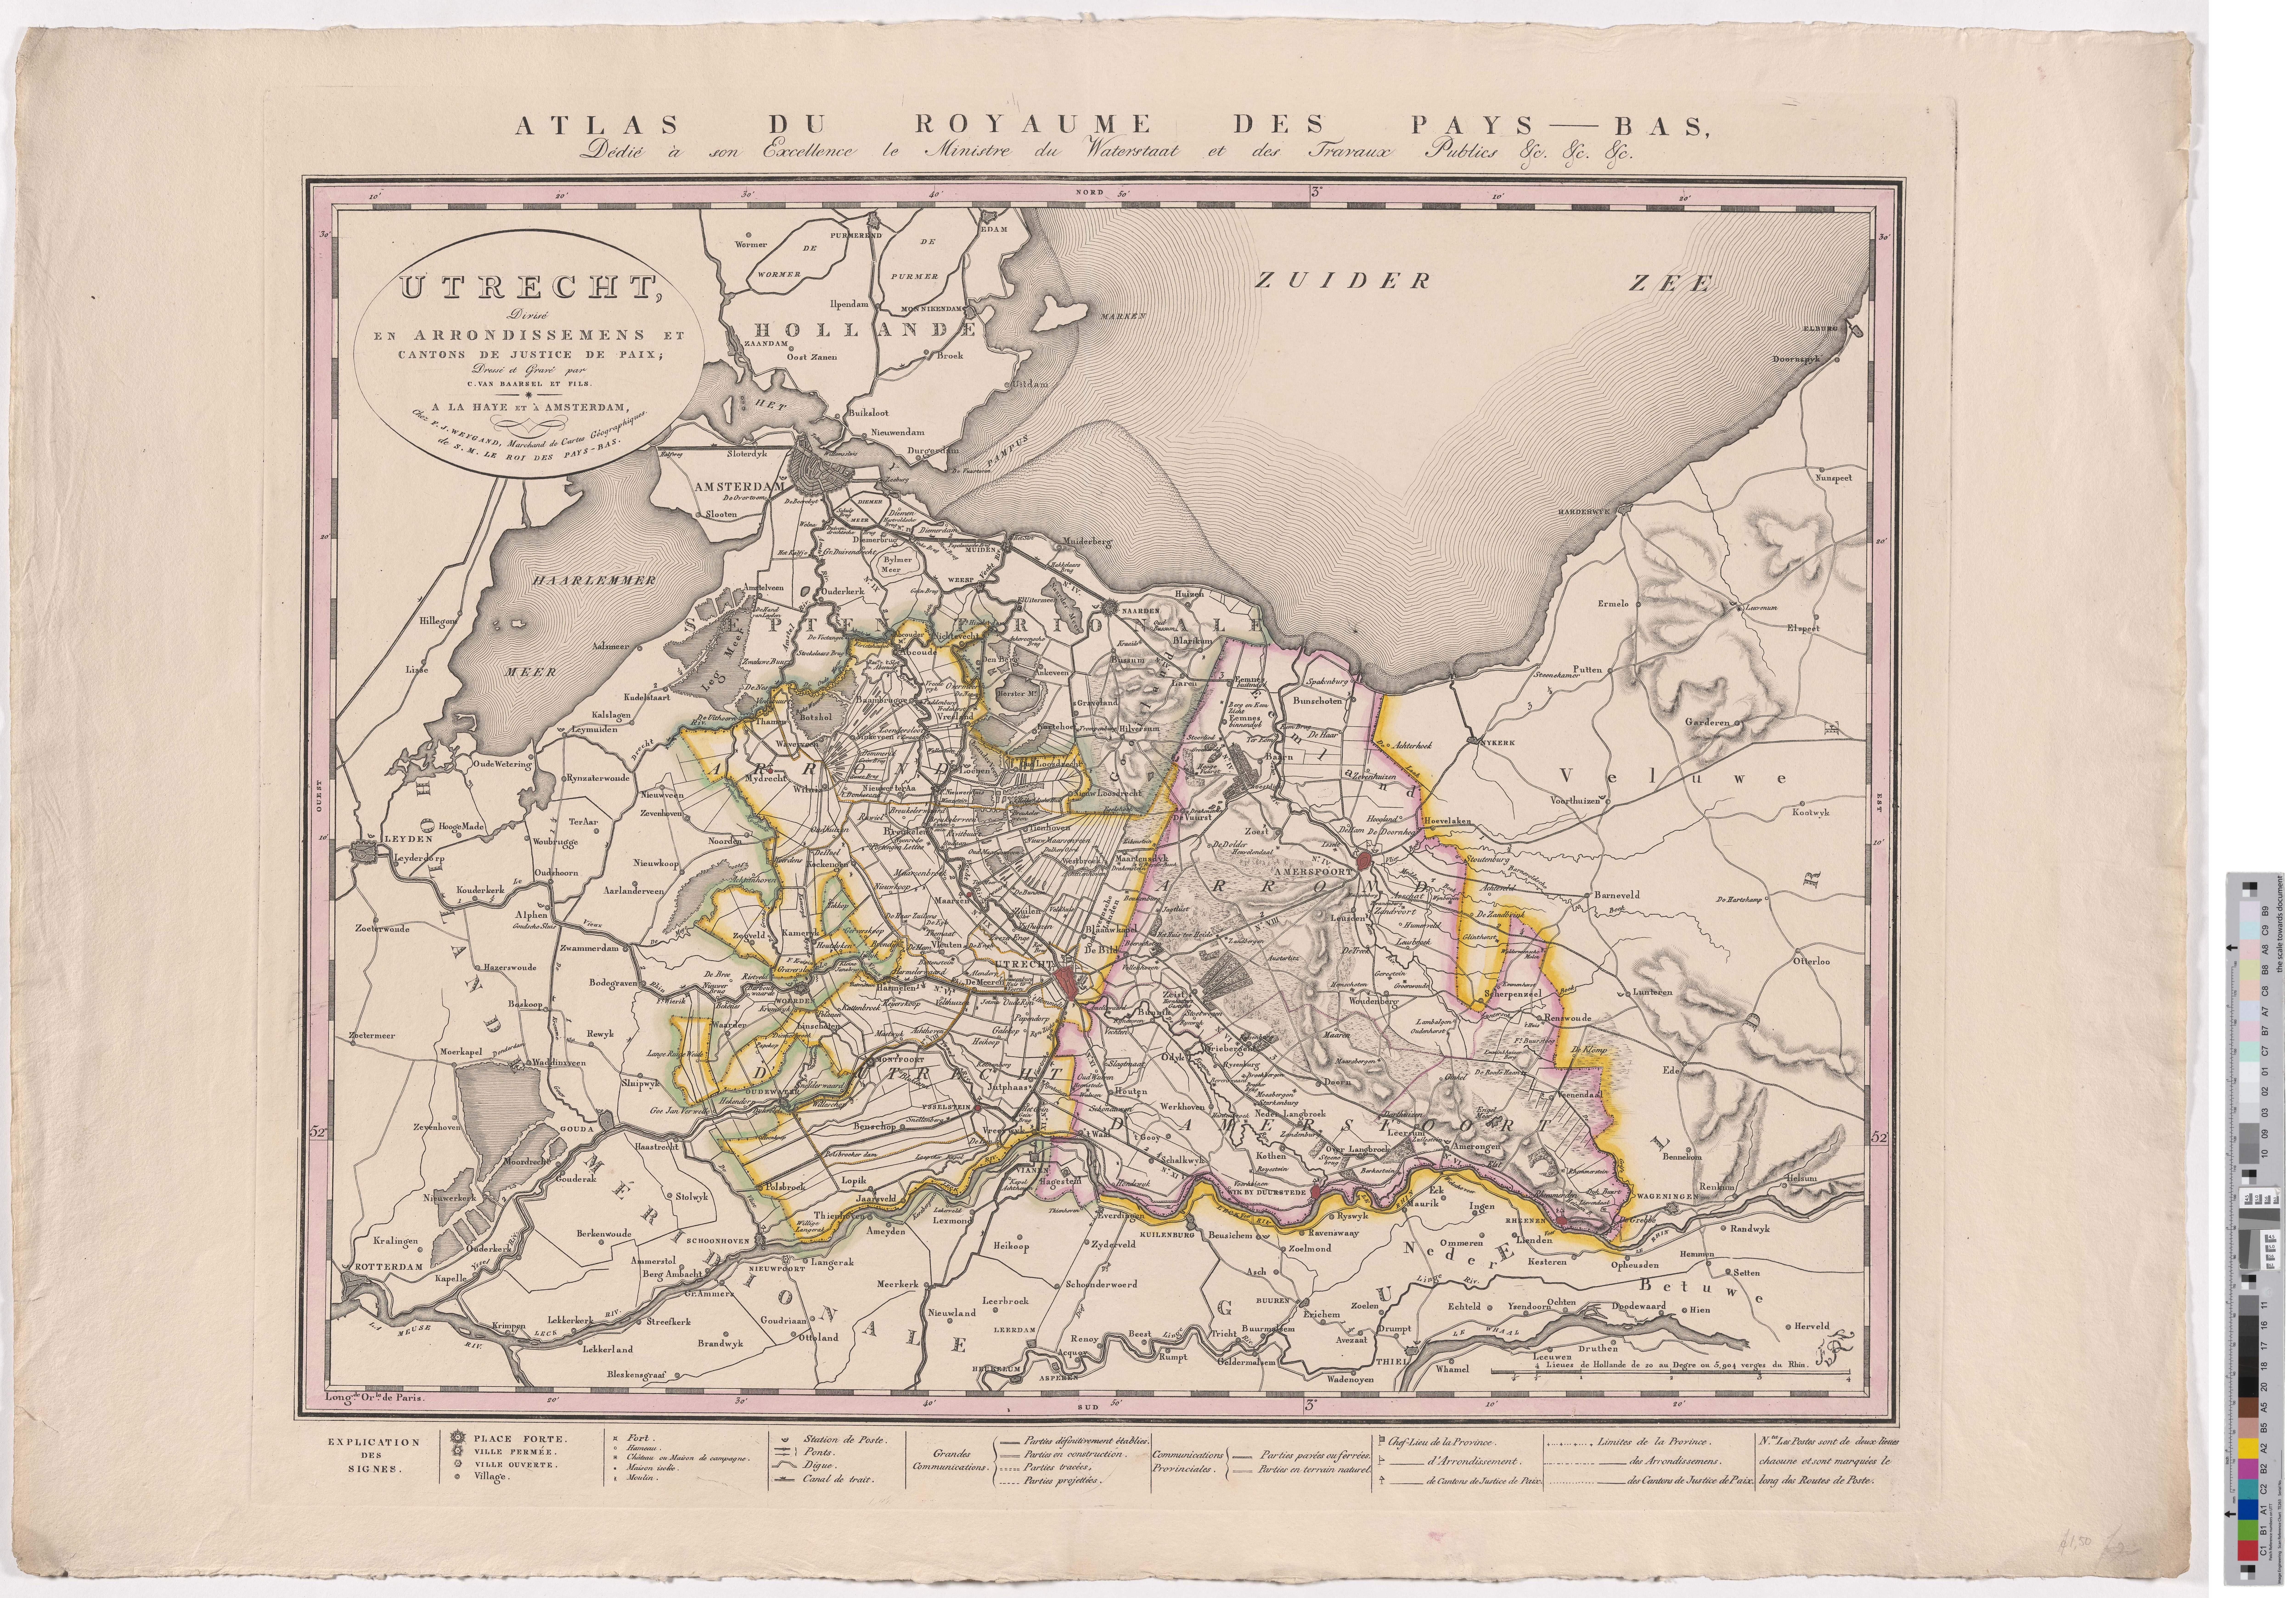 Landkarte "Utrecht, Divisé en Arrondissemens et Cantons de Justice de Paix" (Kreismuseum Grimma RR-F)